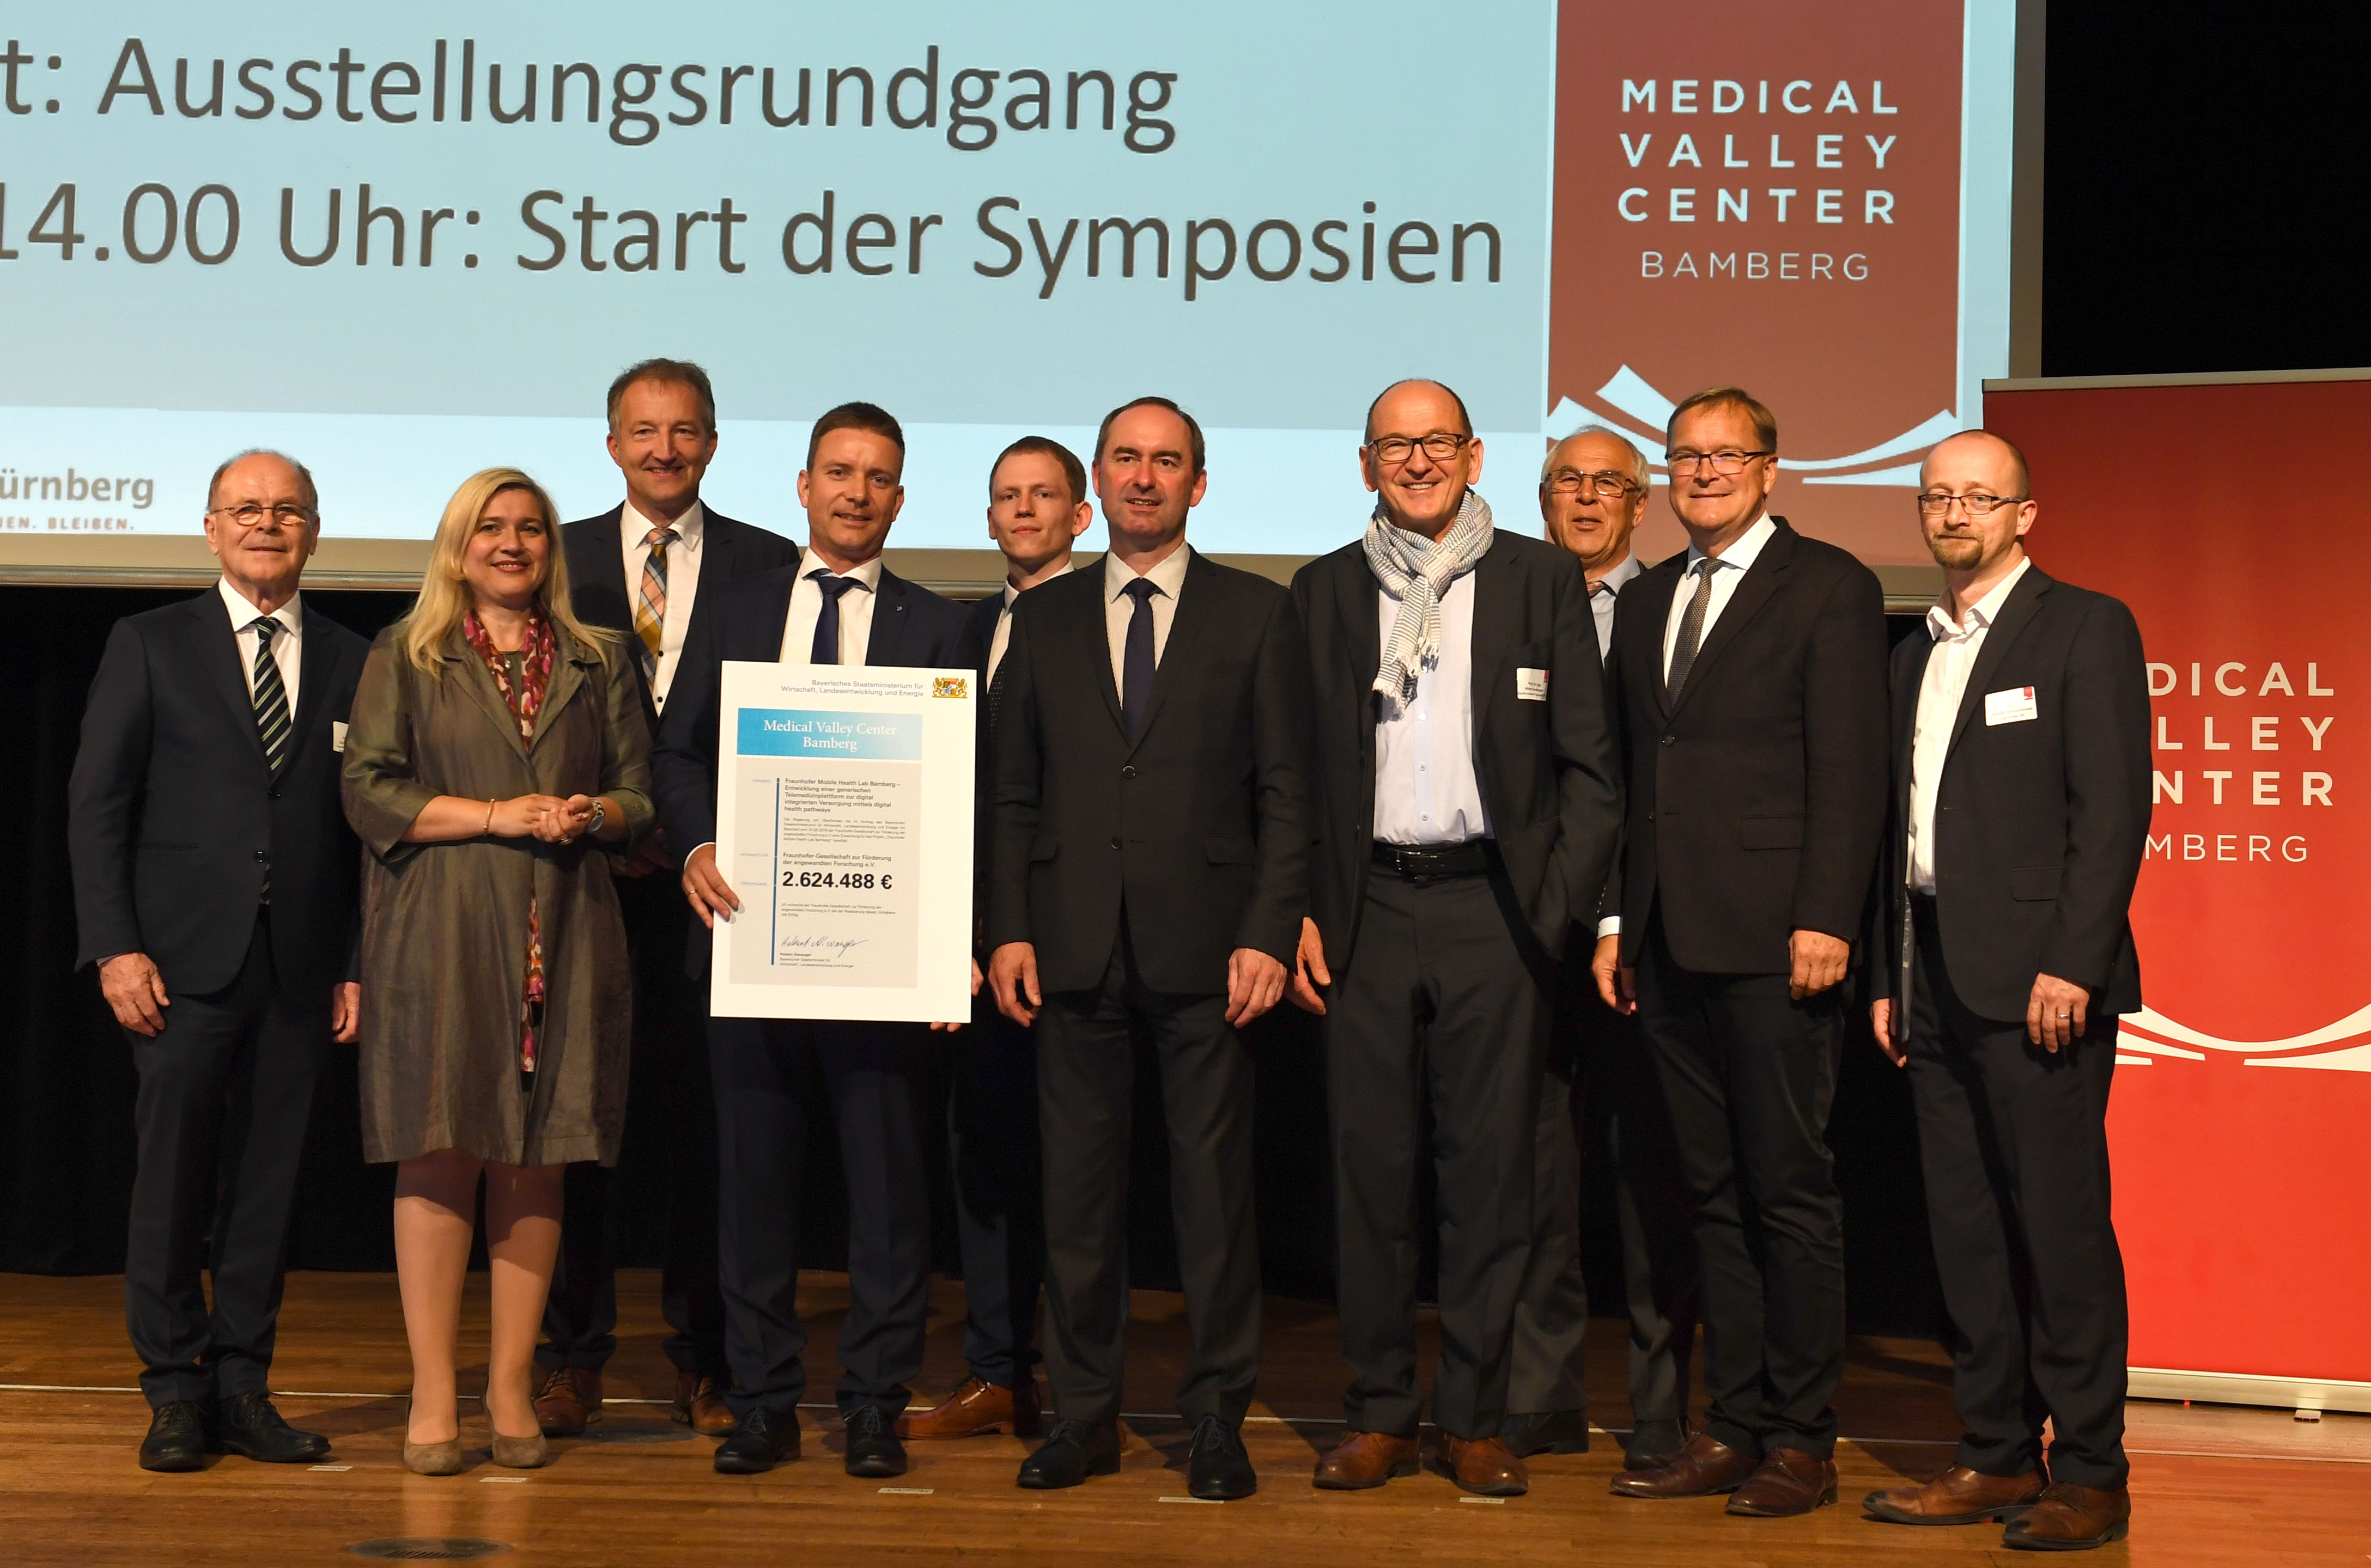 Eröffnung des Medical Valley Centers Bamberg